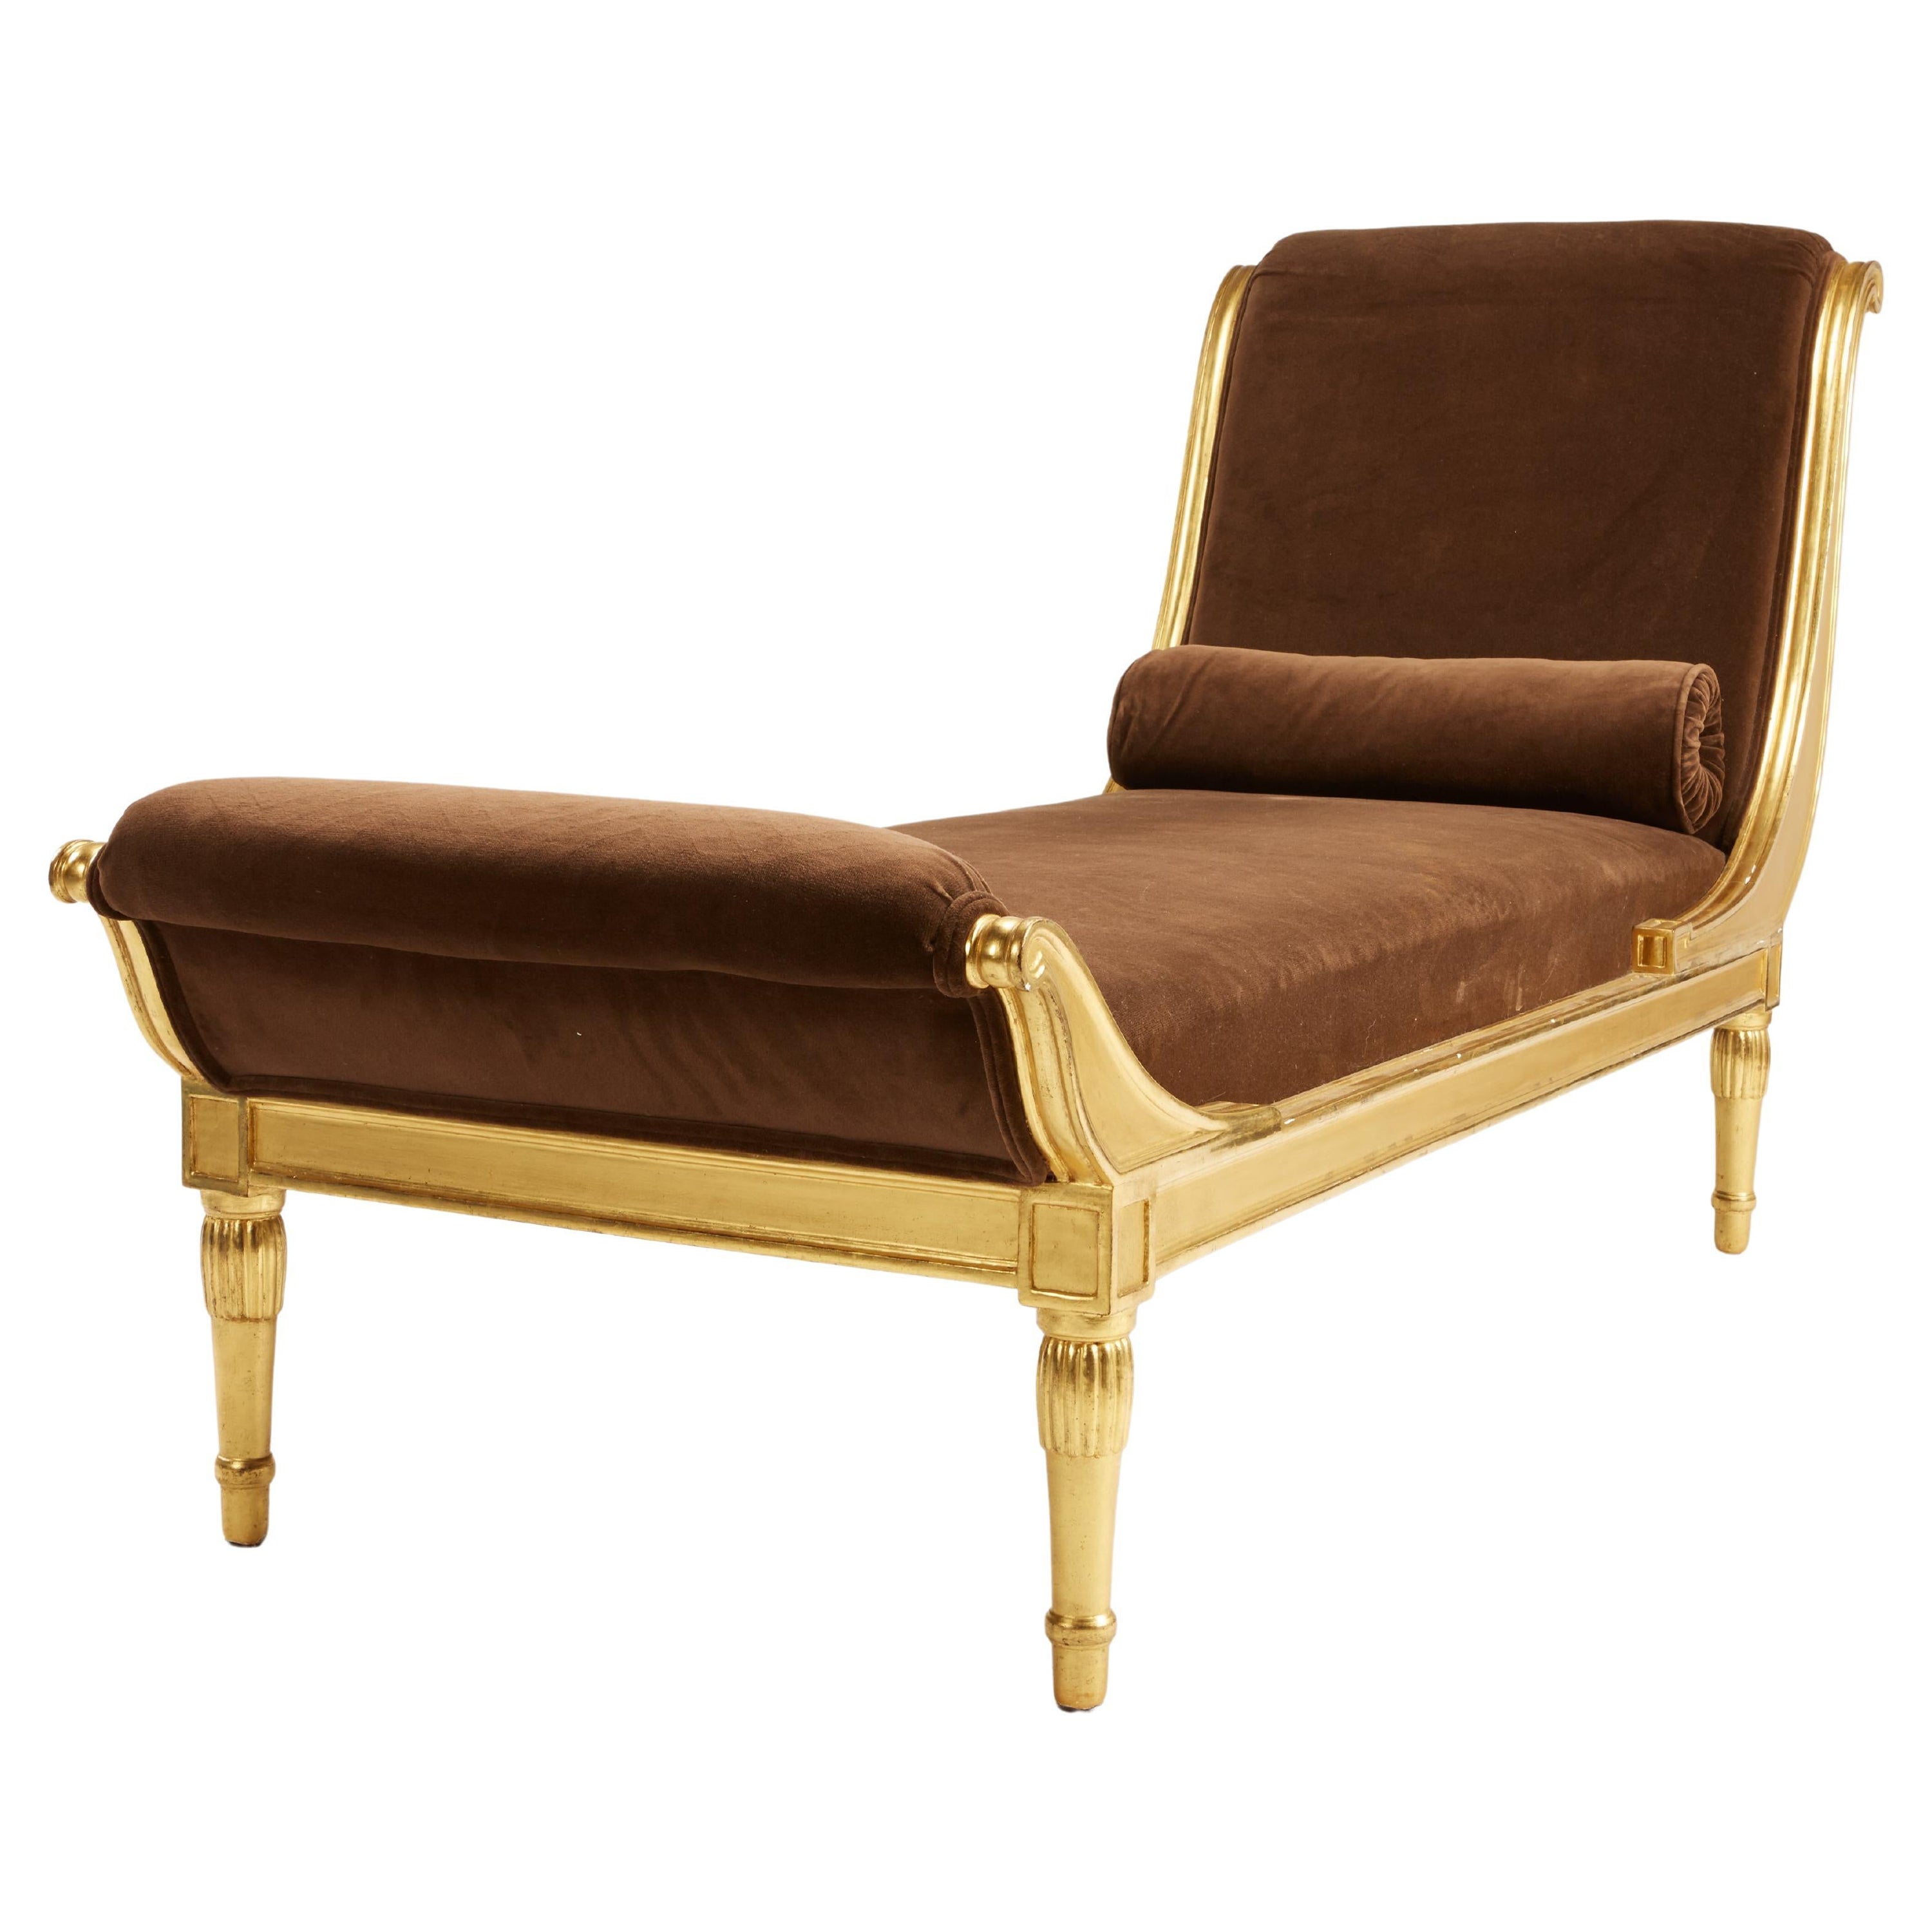 Rare chaise déco française des années 1920 en bois doré par L'Atelier d'Art du Printemps